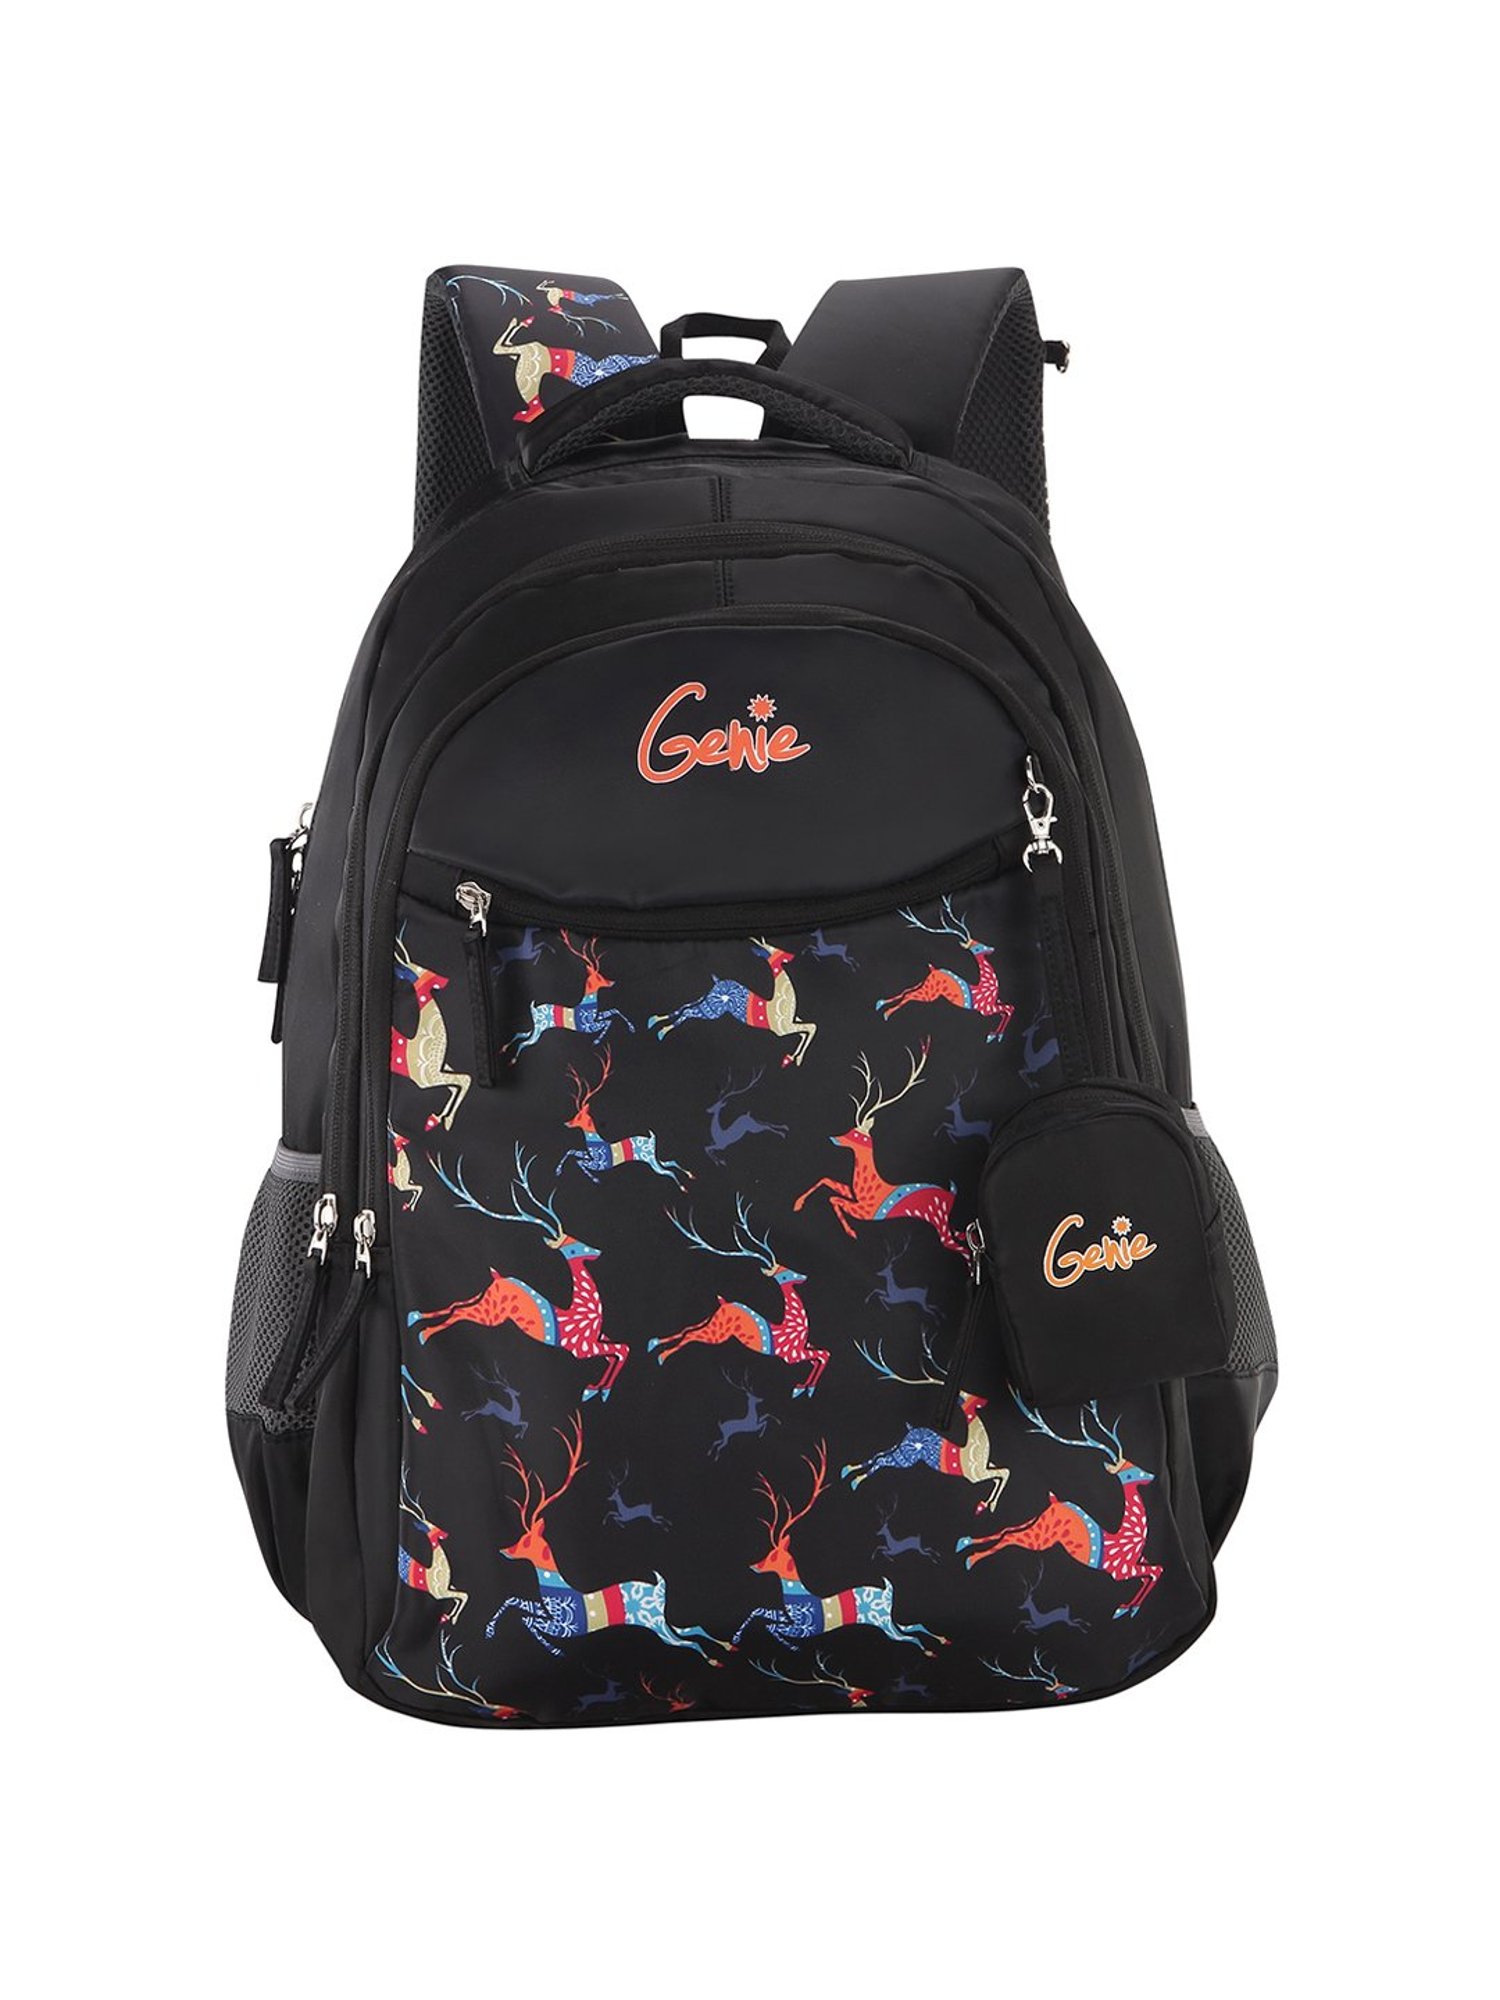 Genie SWAY 36 L Backpack Black  Price in India  Flipkartcom